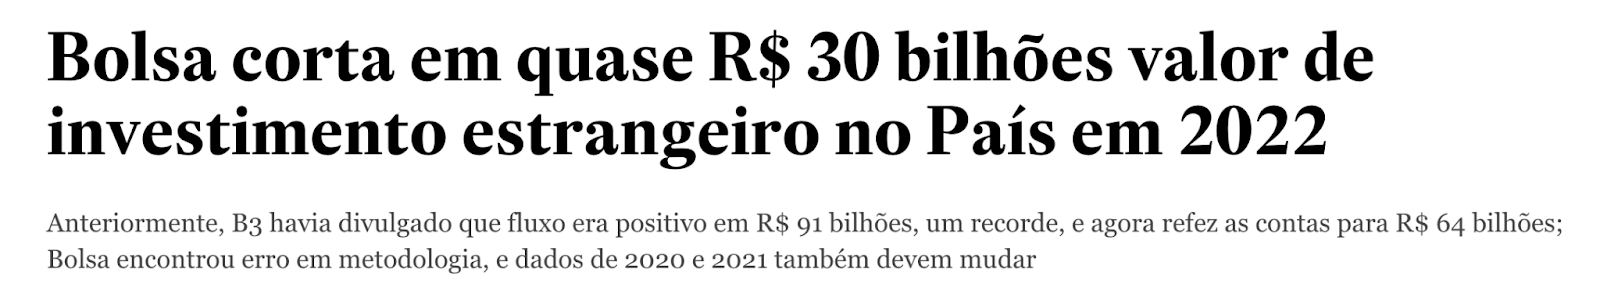 Print de manchete do Estadão: "Bolsa corta em quase R$ 30 bilhões valor de investimento estrangeiro no País em 2022."